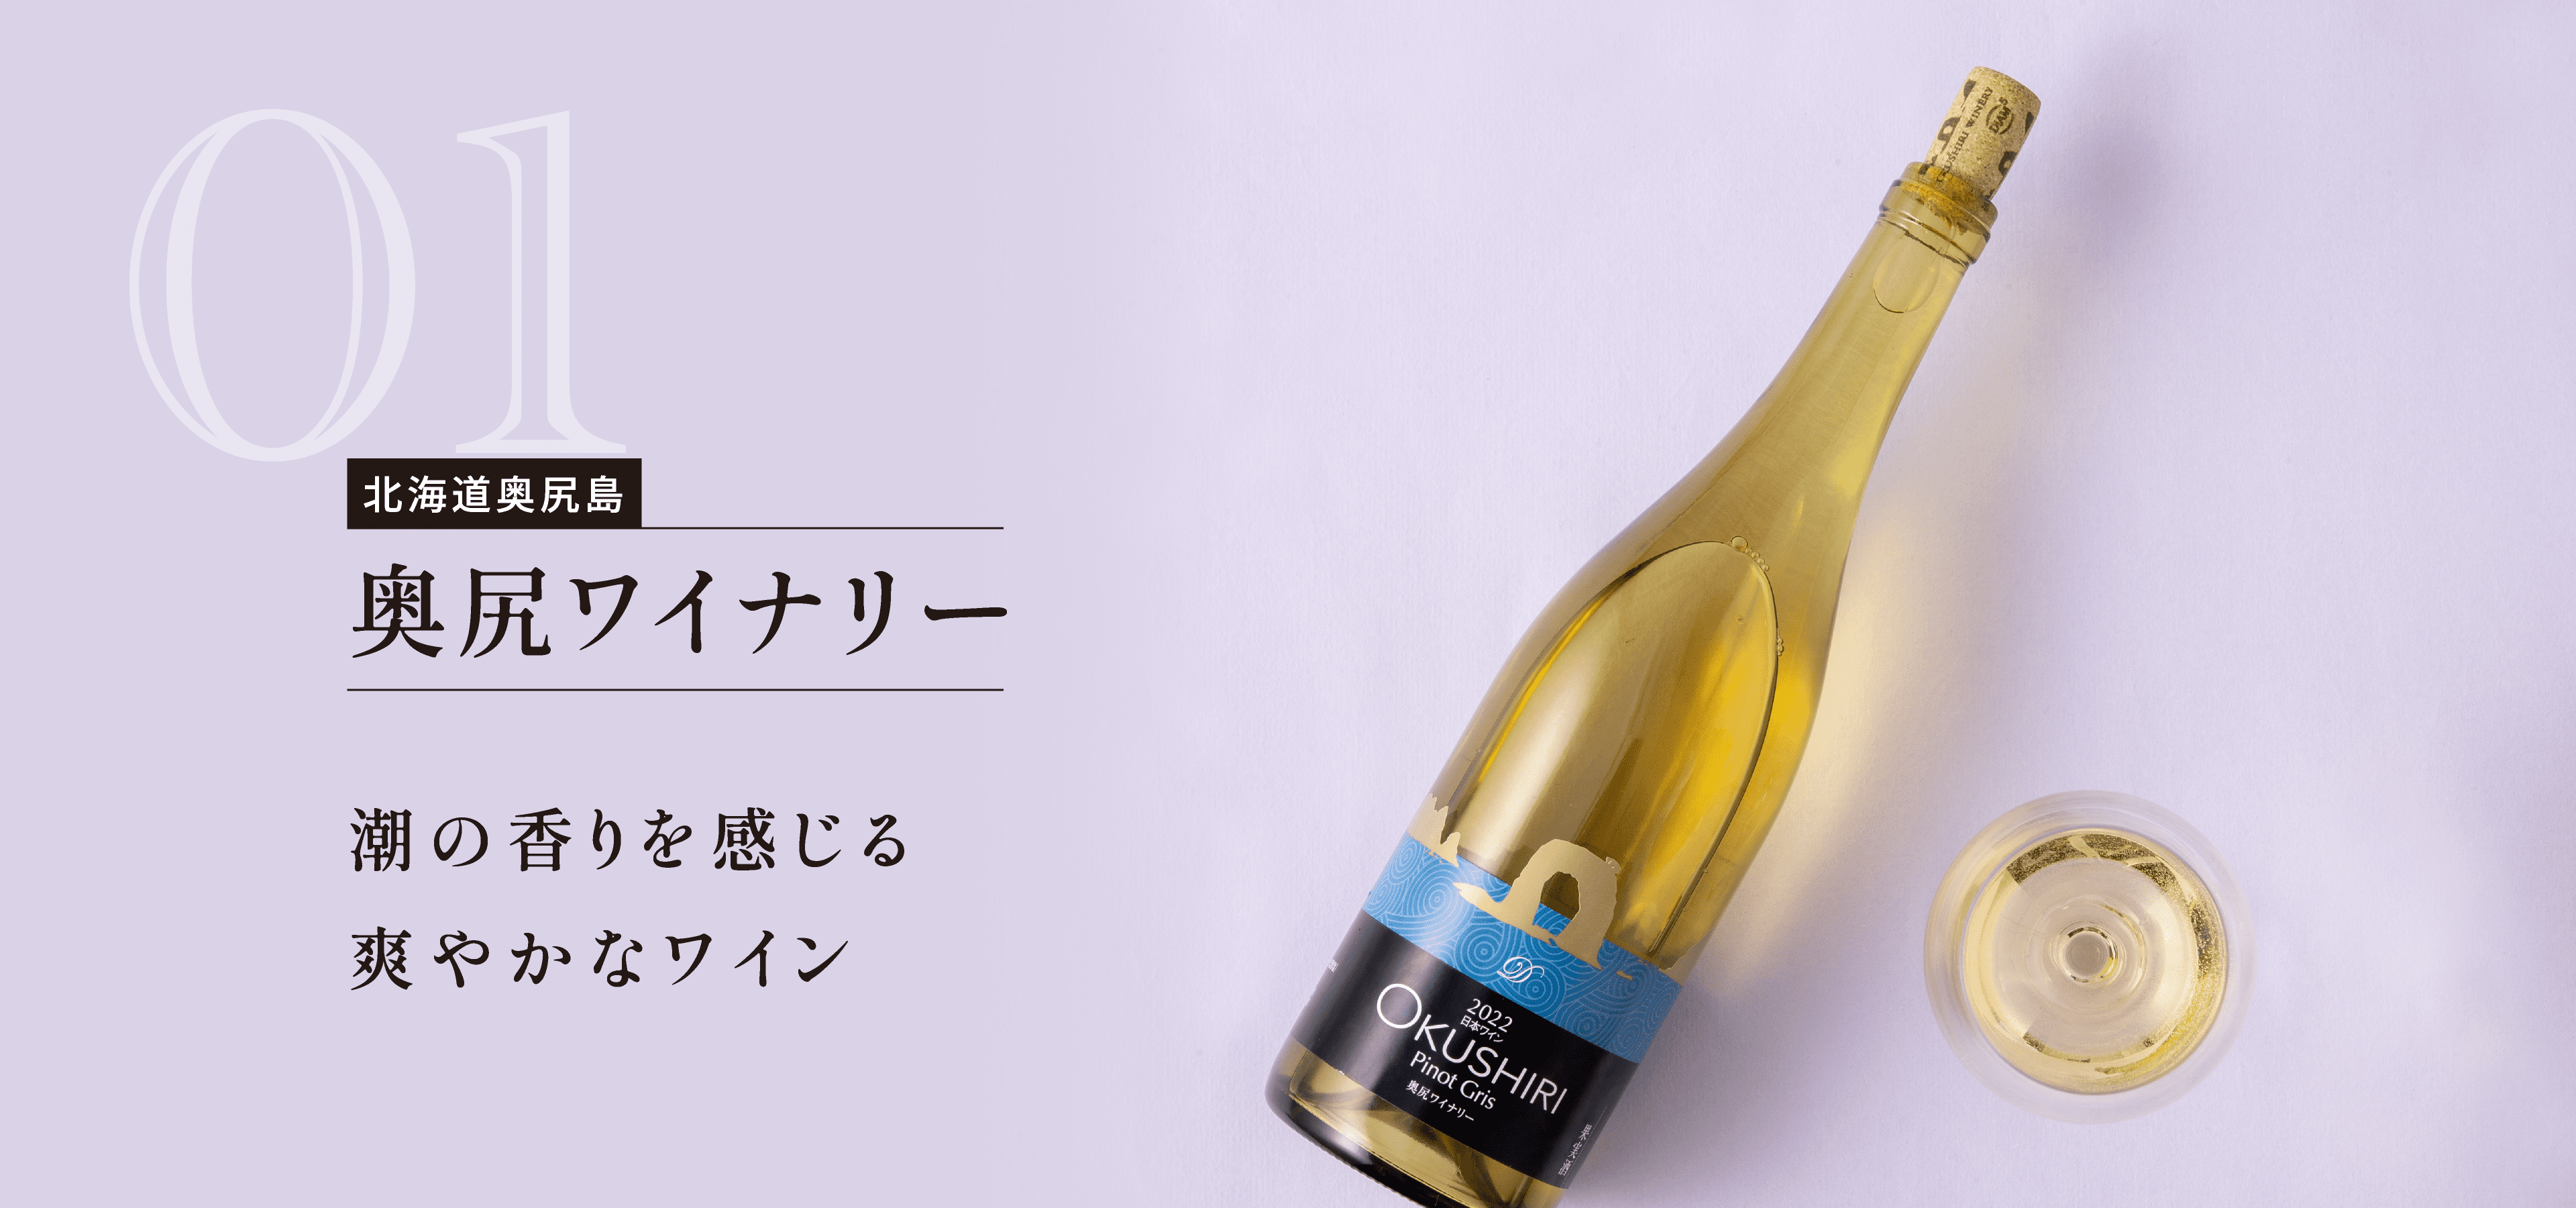 北海道奥尻島 奥尻ワイナリー 潮の香りを感じる爽やかなワイン